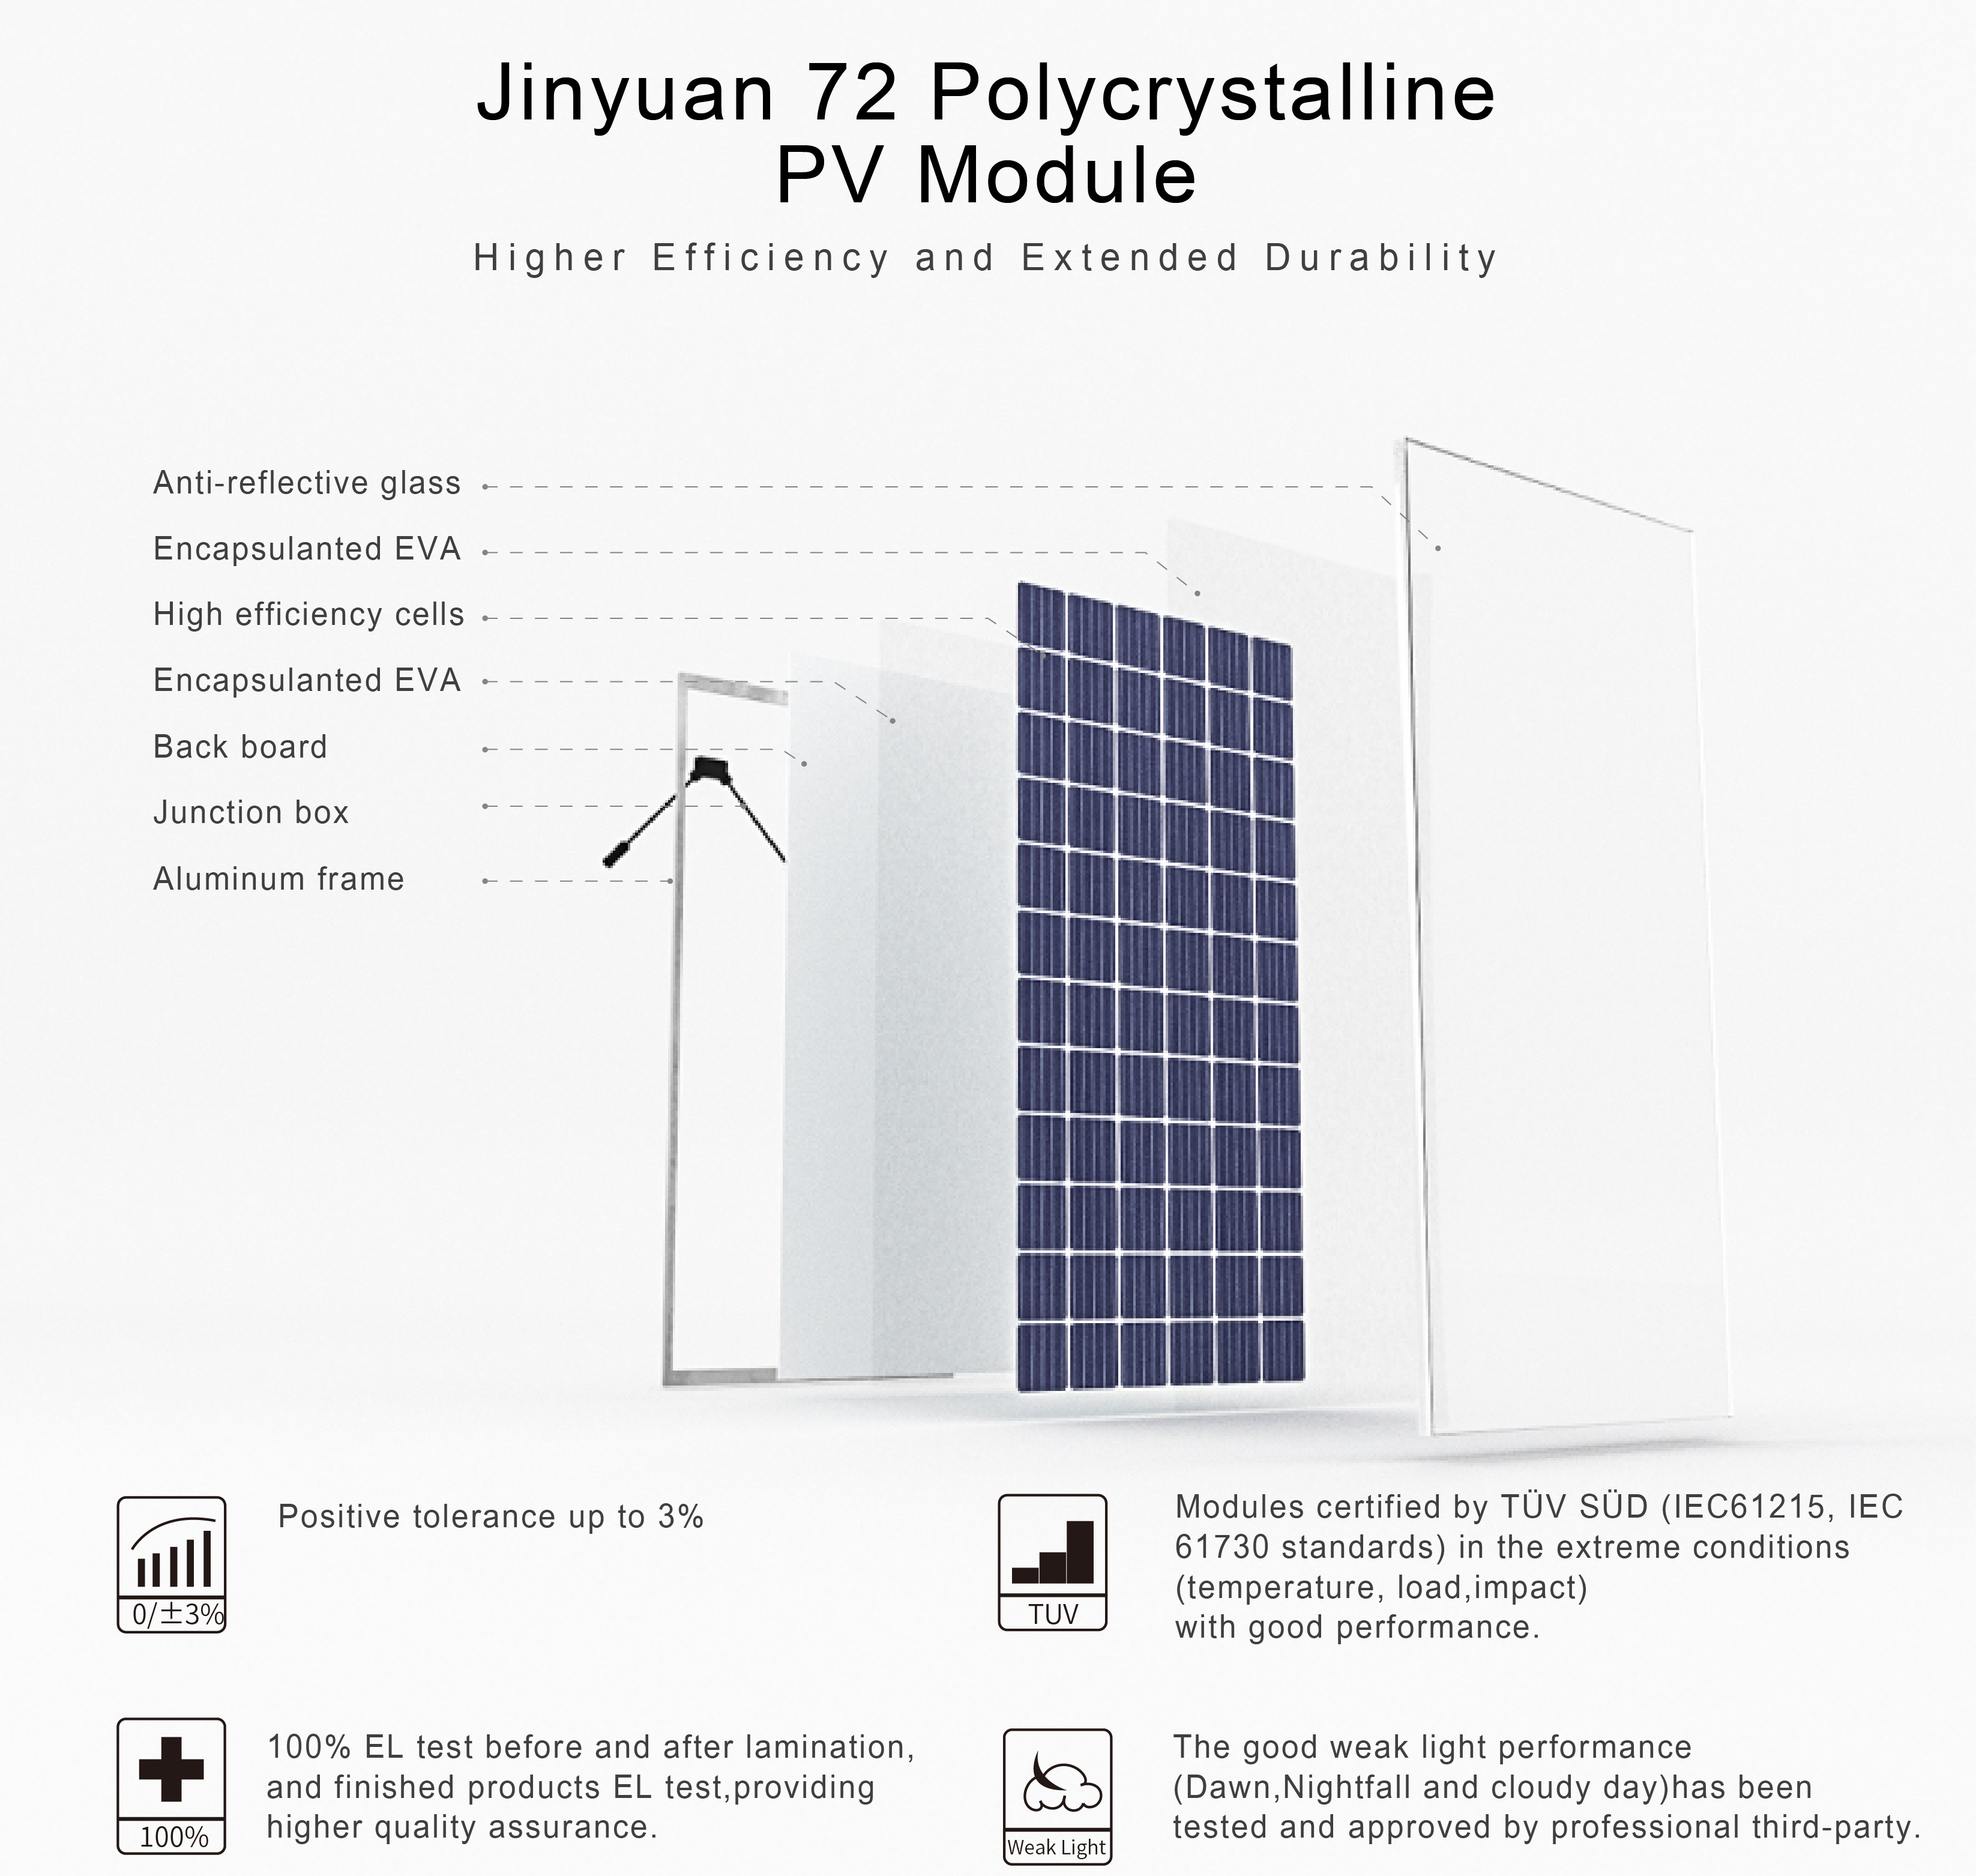 72 cells 320w 325w 335w 340w solar panel polycrystalline 330w PV Module